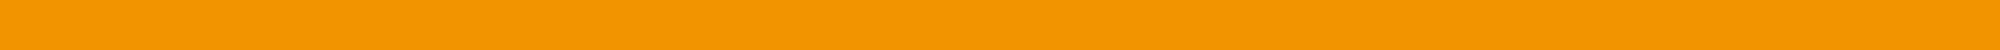 Streifen orange als Trenner der Inhalte